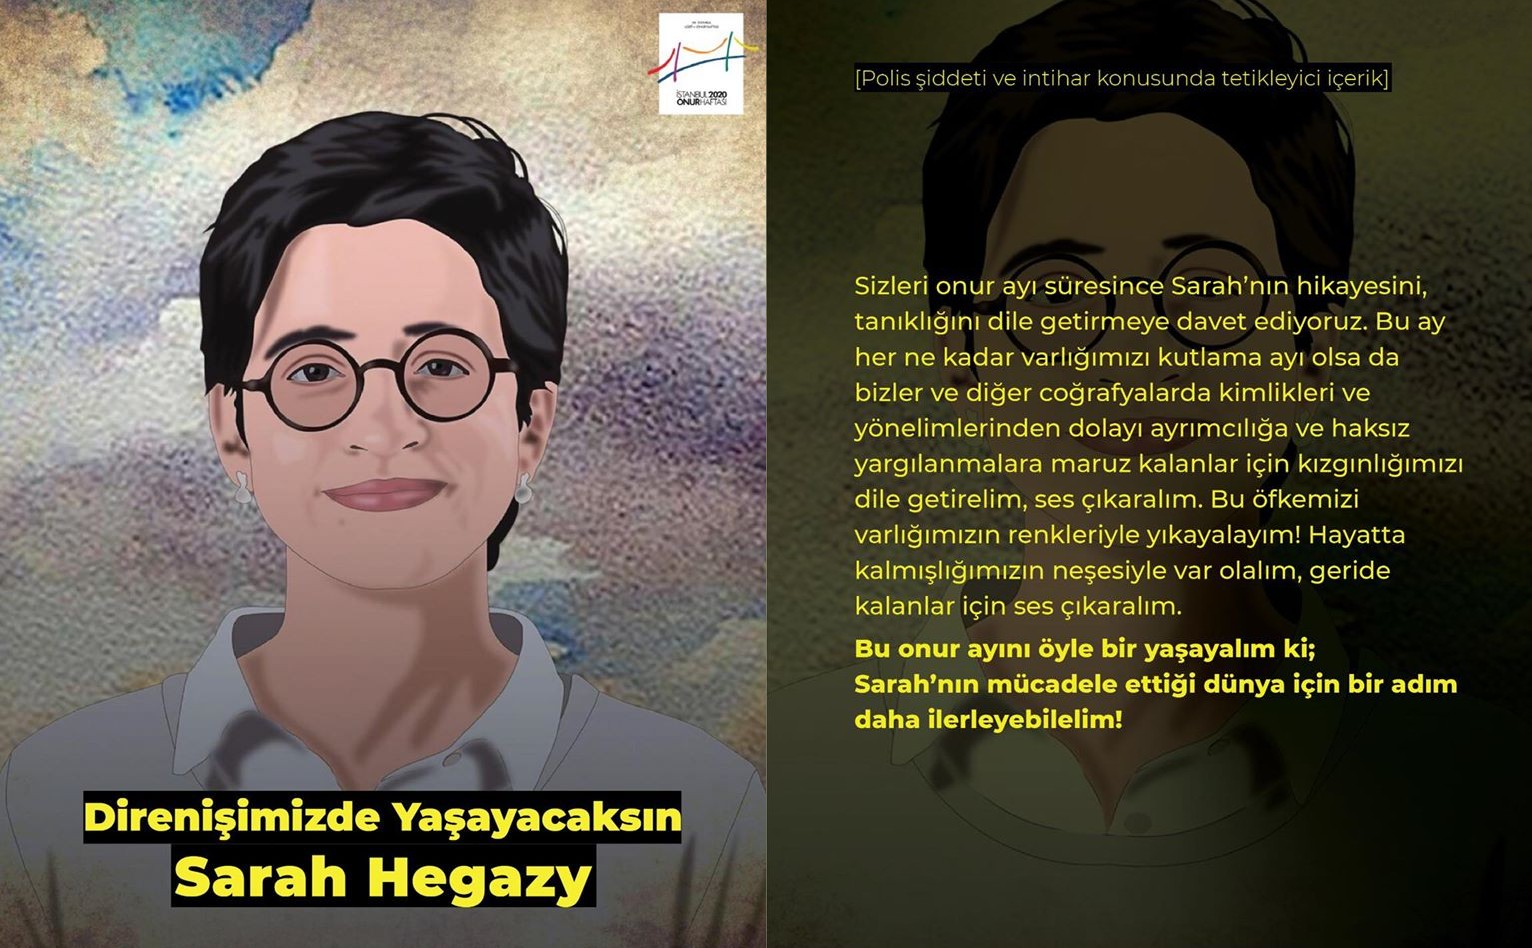 İstanbul LGBTİ+ Onur Haftası: “Direnişimizde yaşayacaksın Sarah Hegazy” | Kaos GL - LGBTİ+ Haber Portalı